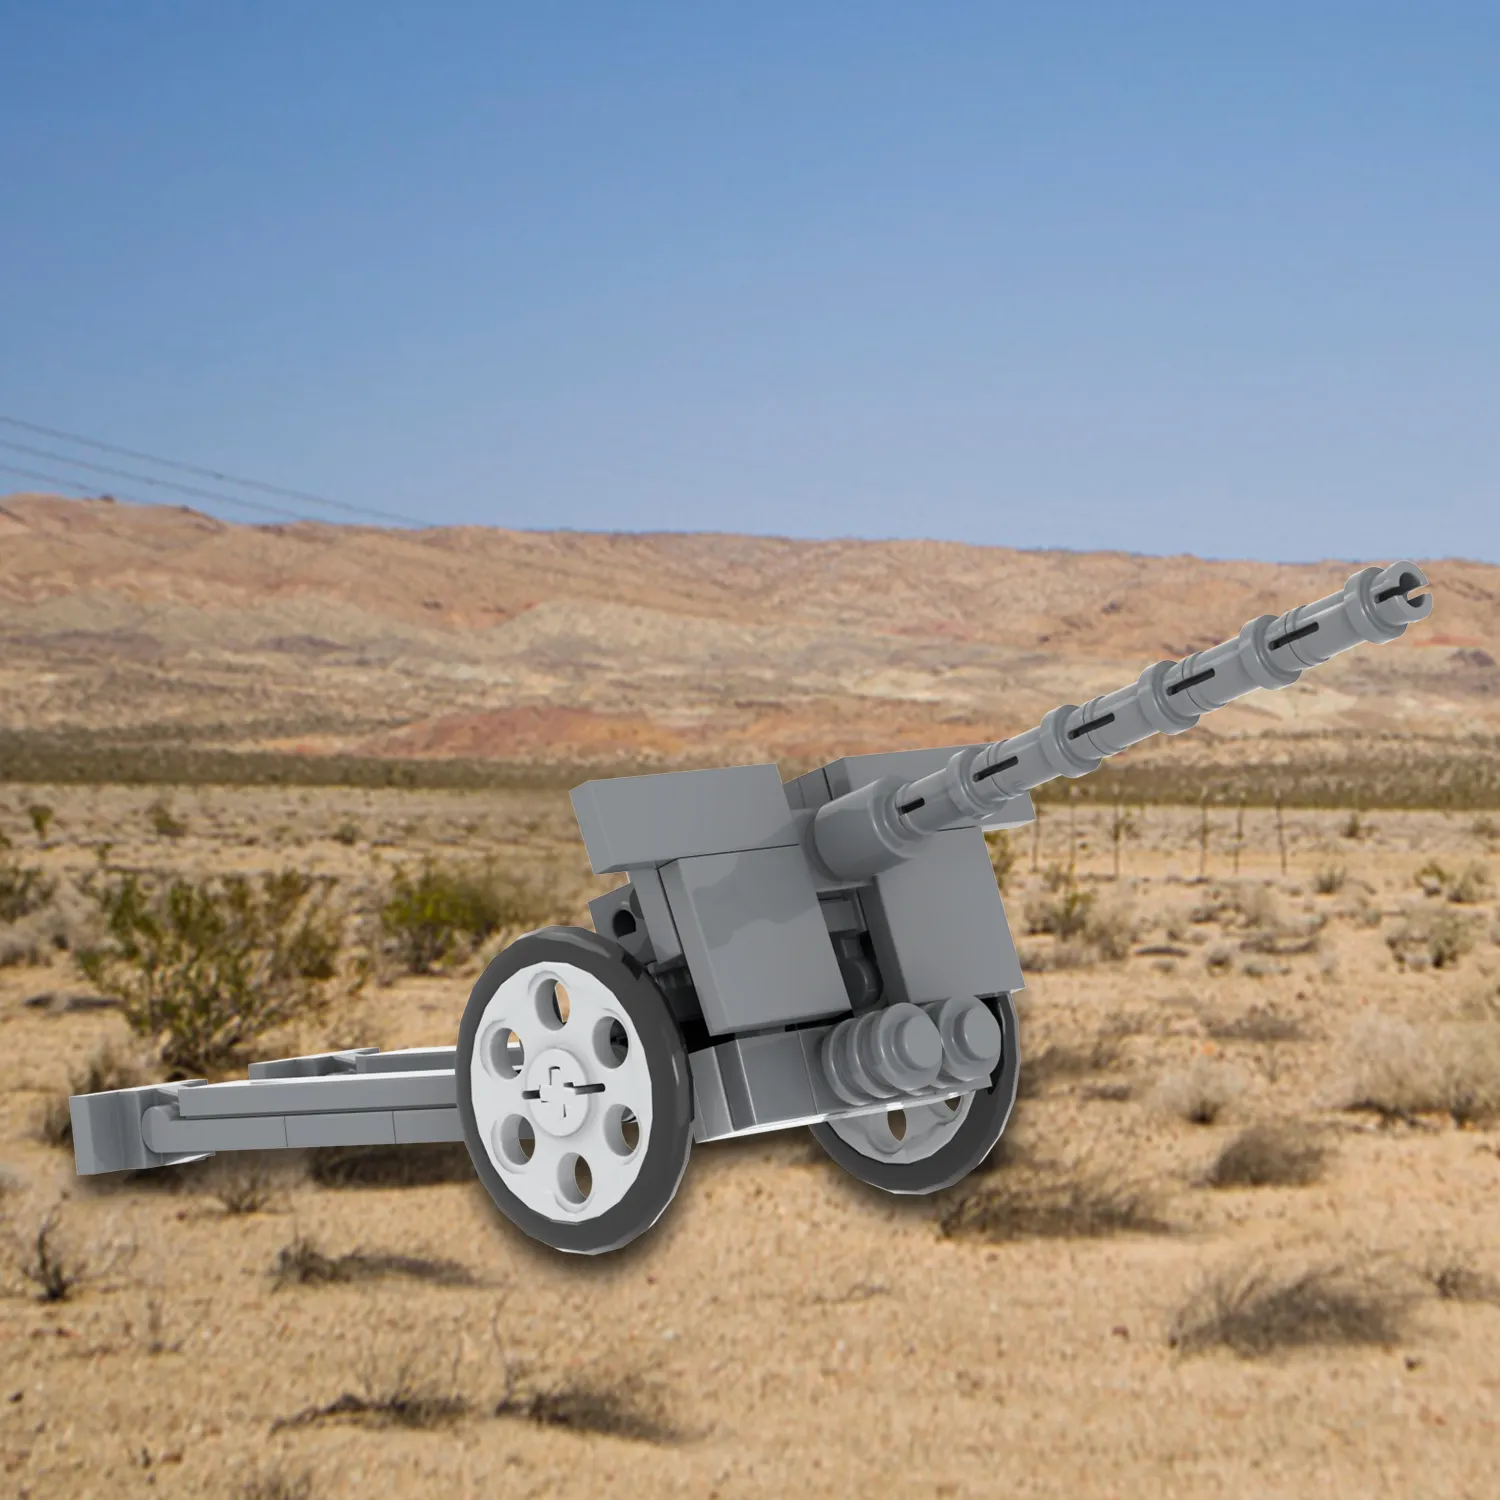 MOC5023 द्वितीय विश्व युद्ध के 76mm Howitzer सैन्य युद्ध ईंट बंदूक हथियार सामान मॉडल इमारत ब्लॉकों शैक्षिक खिलौने बच्चों के लिए उपहार